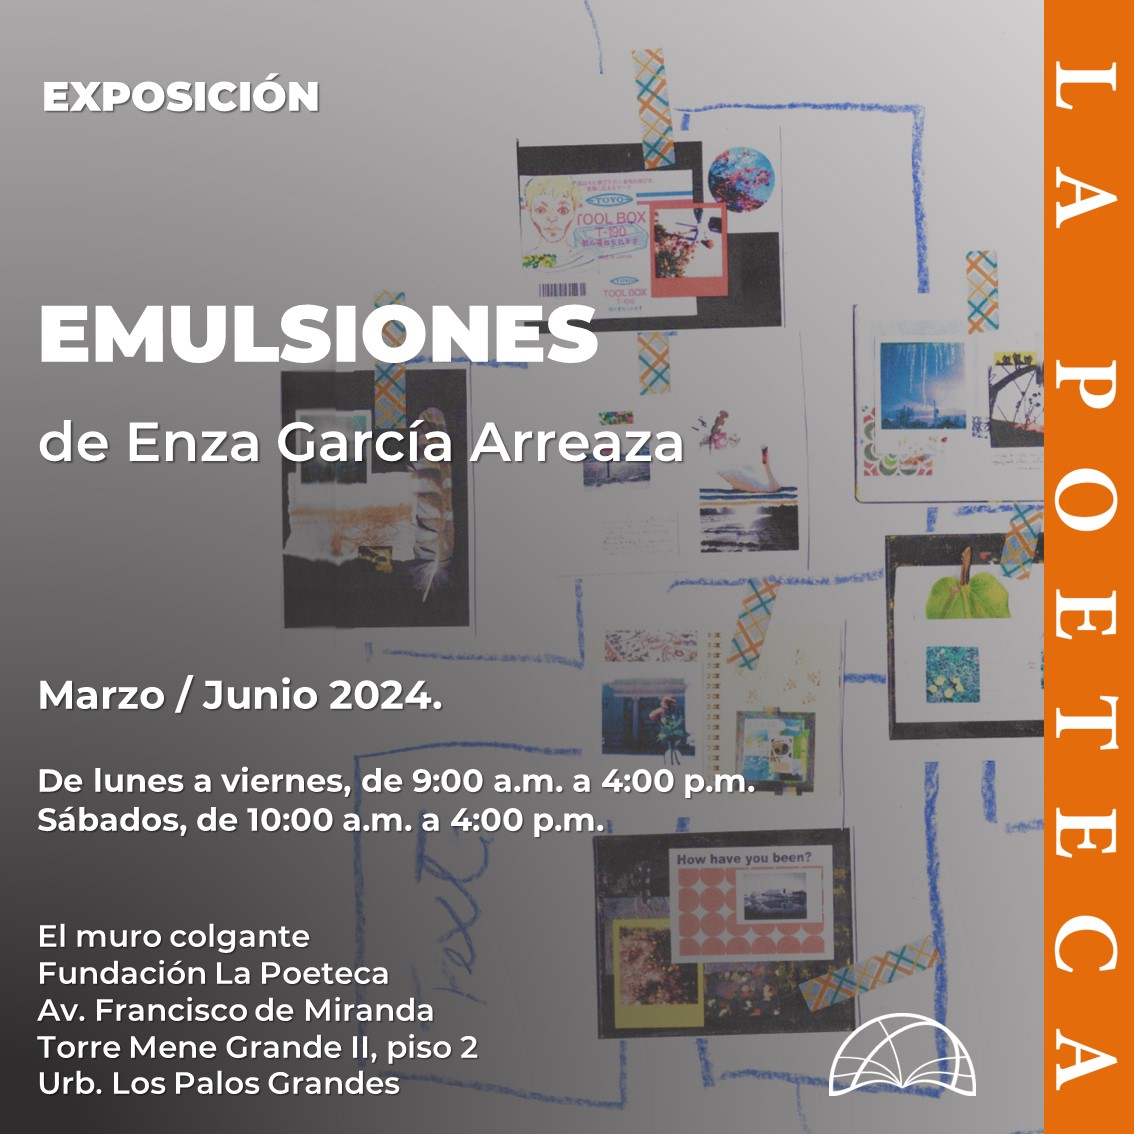 Buenos días, amigos. Recuerden que la exposición «Emulsiones», de Enza García Arreaza (@enzagarcia), se encuentra exhibida en El muro colgante, de nuestra sede. Los invitamos a visitarnos y disfrutar esta muestra de collages.